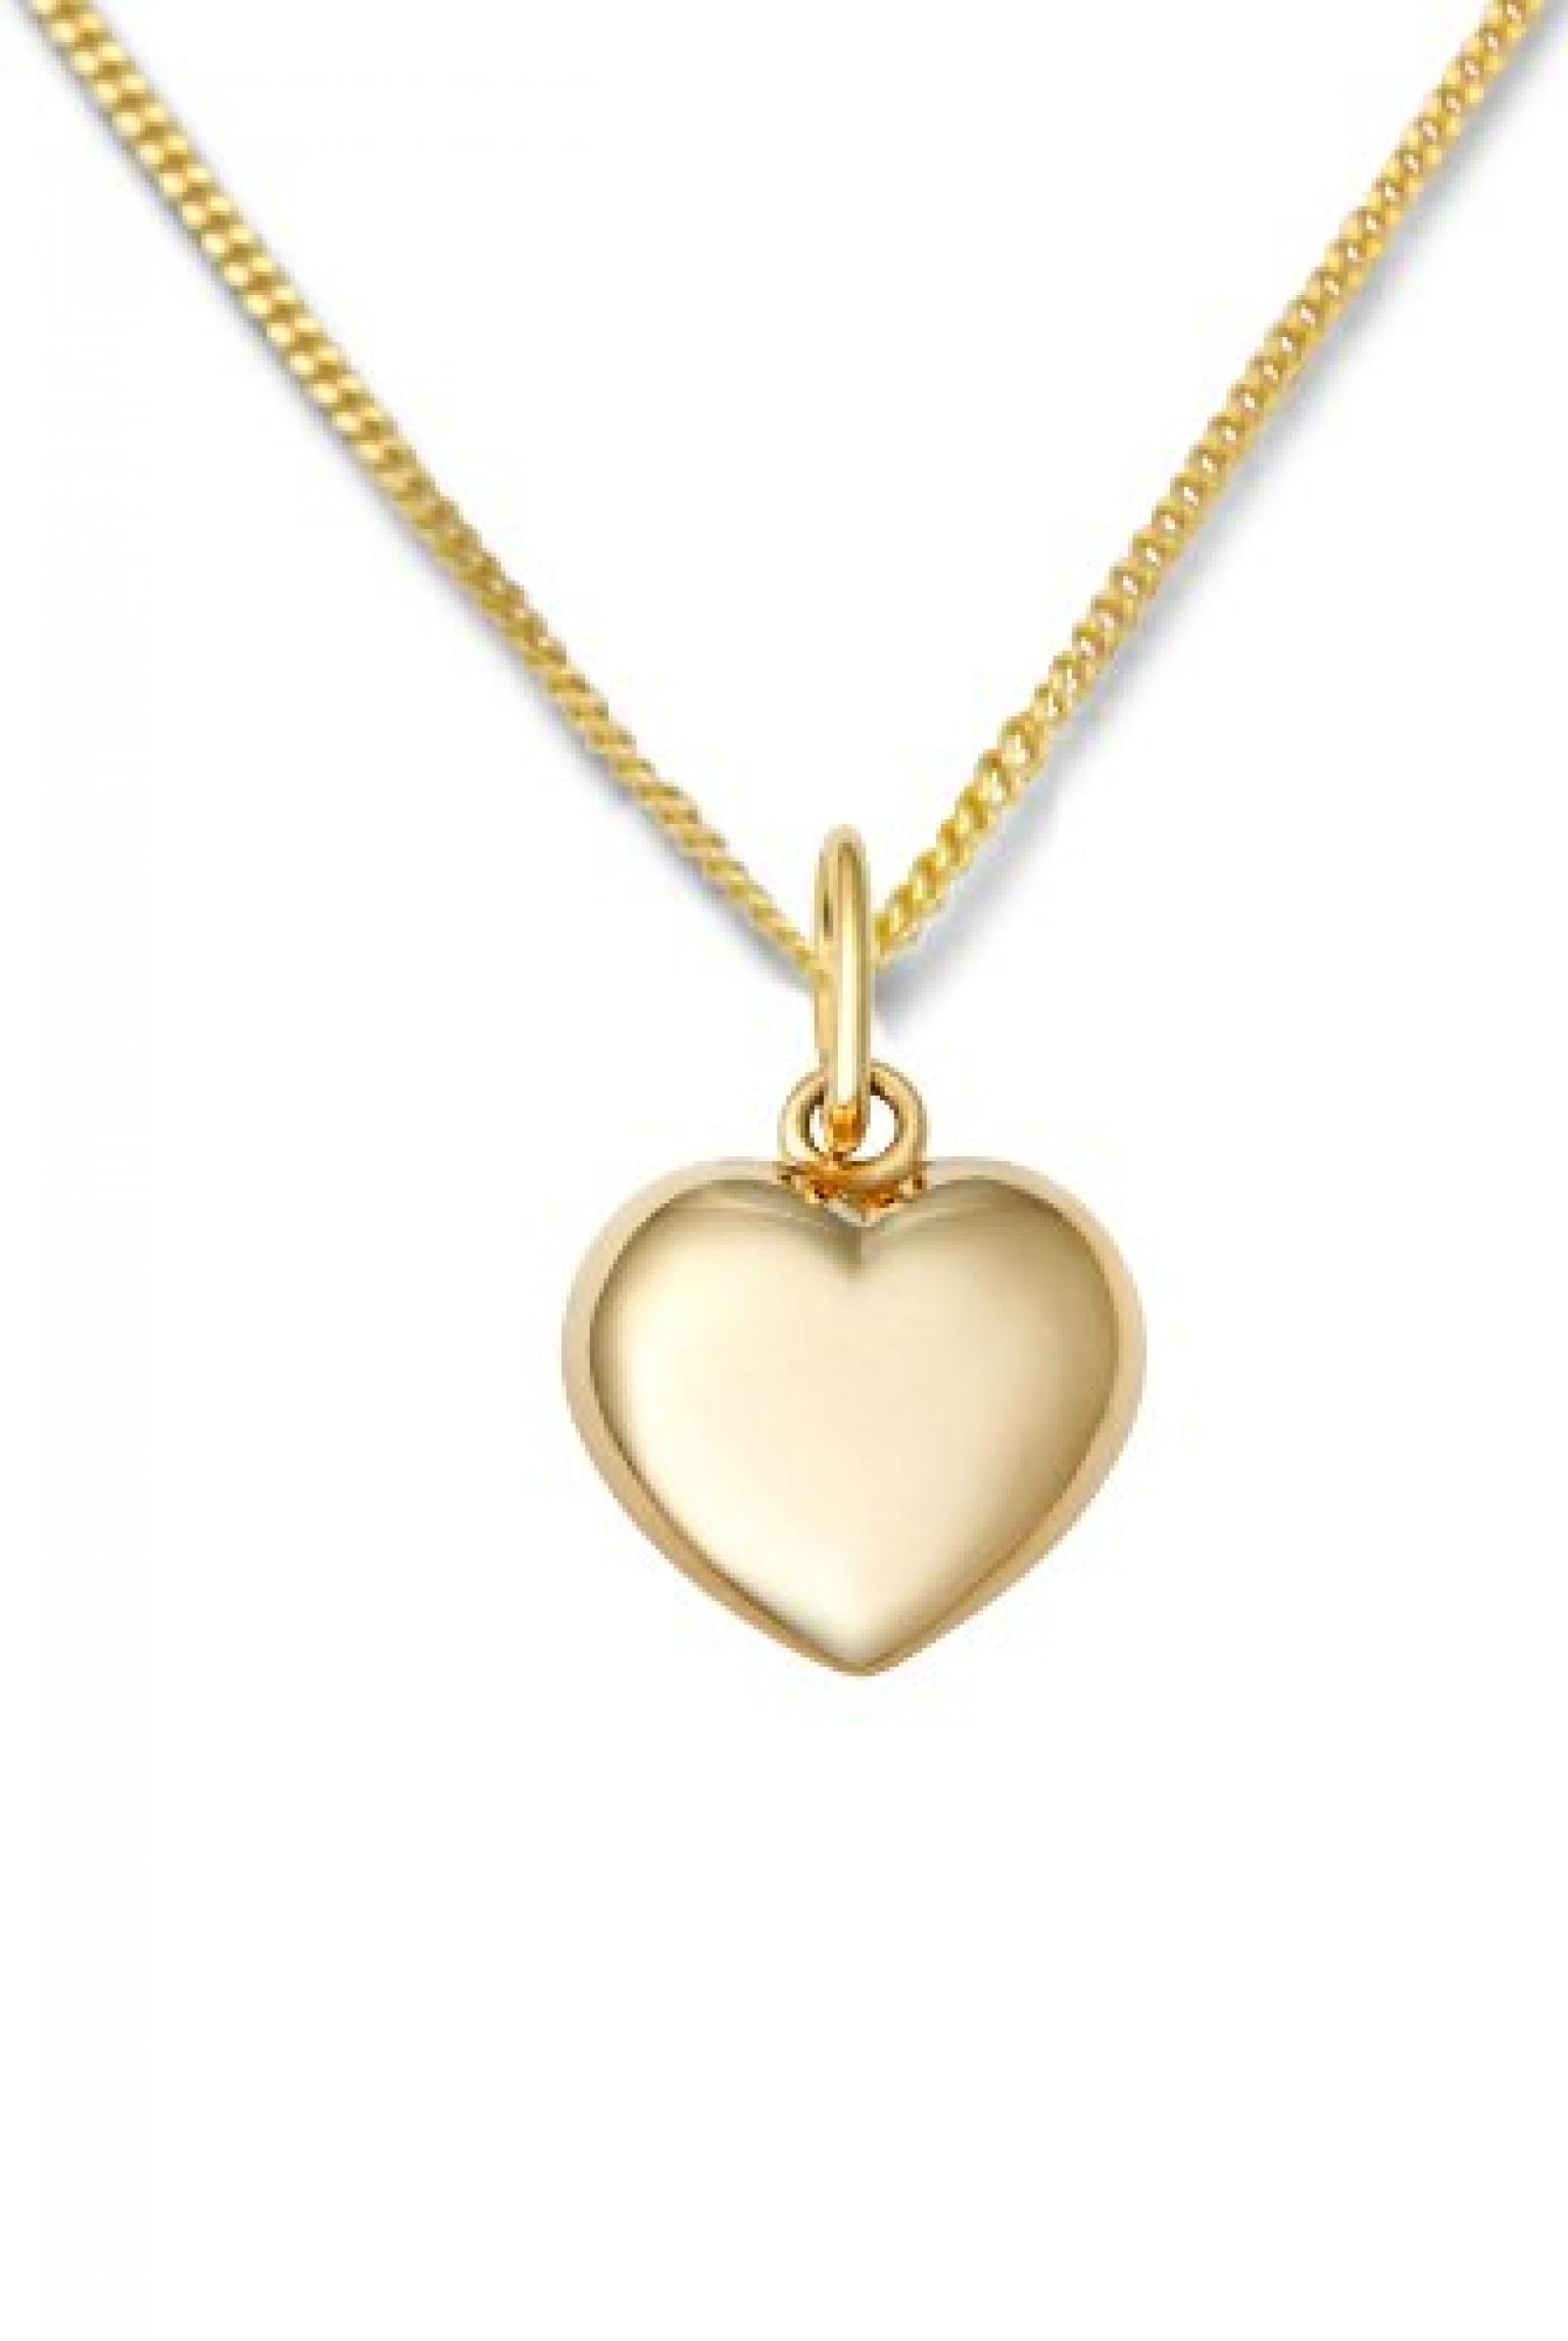 Miore Damen-Halskette 375 Gelbgold Herz Anhänger 45cm MA961CHN 